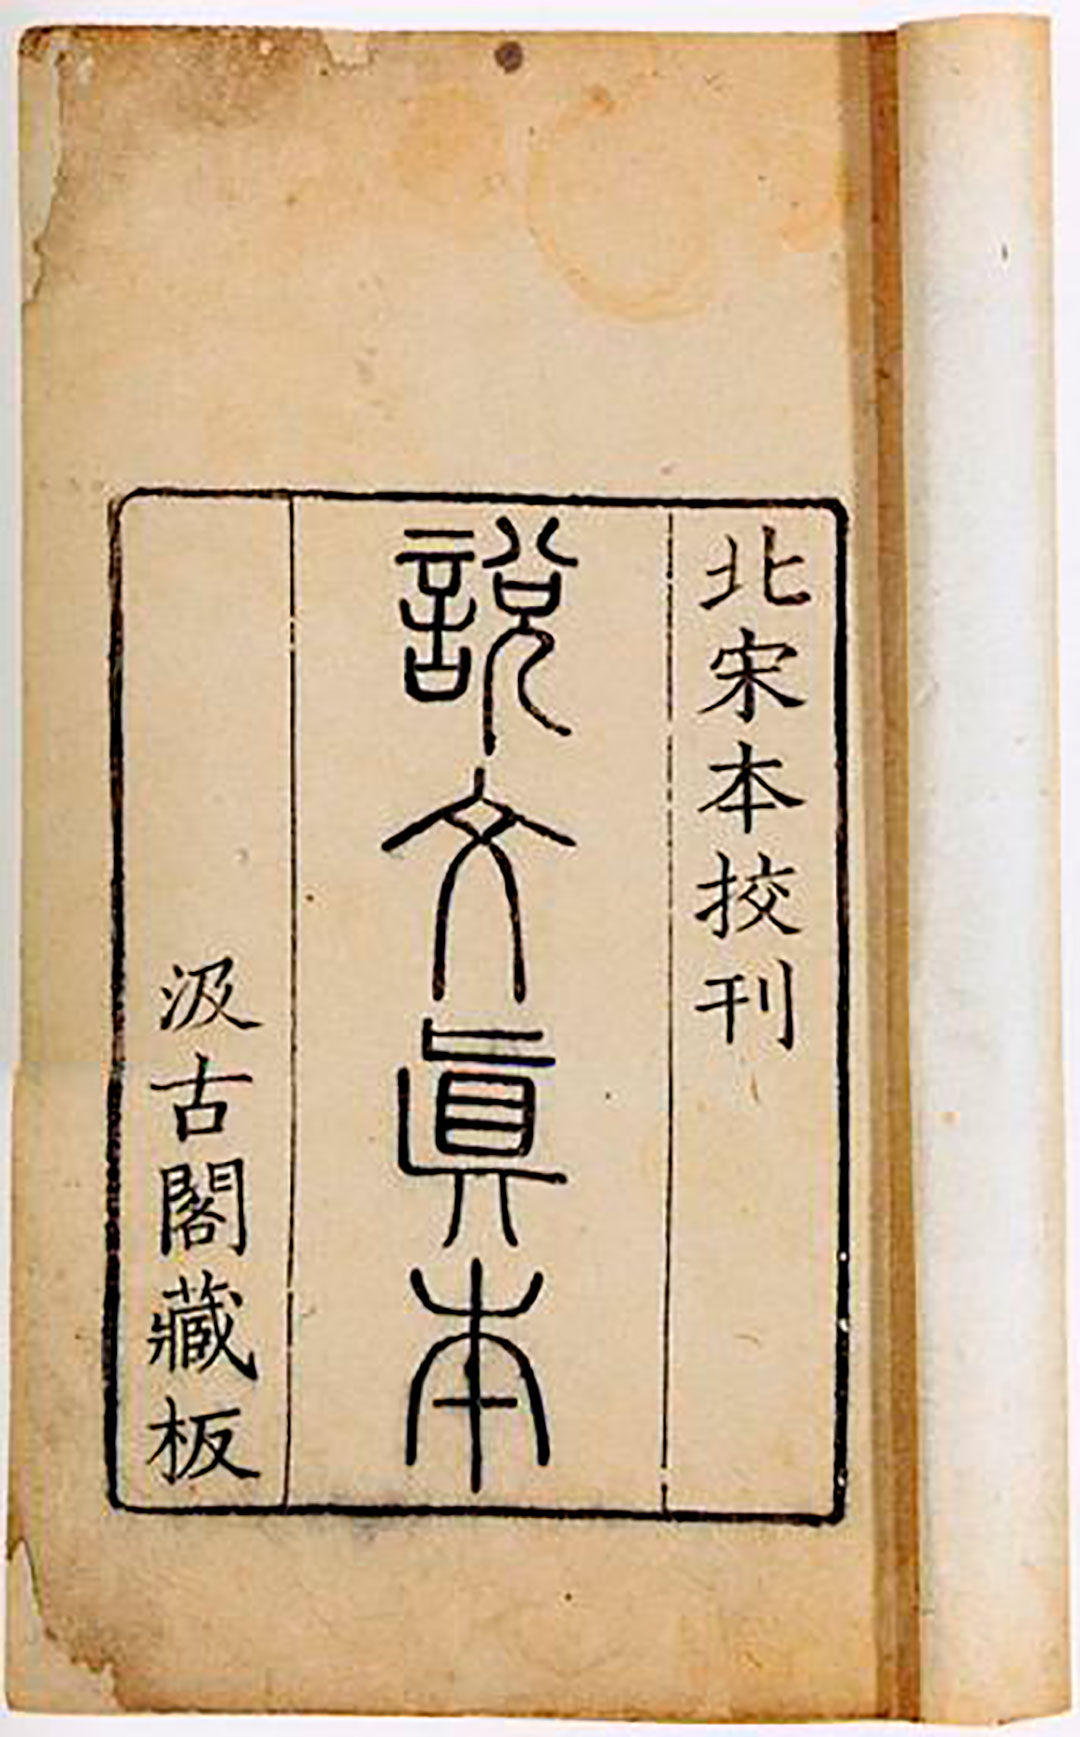 Portada del Shuowen, diccionario dedicado a las descripciones etimológicas de los caracteres chinos. Wikimedia Commons